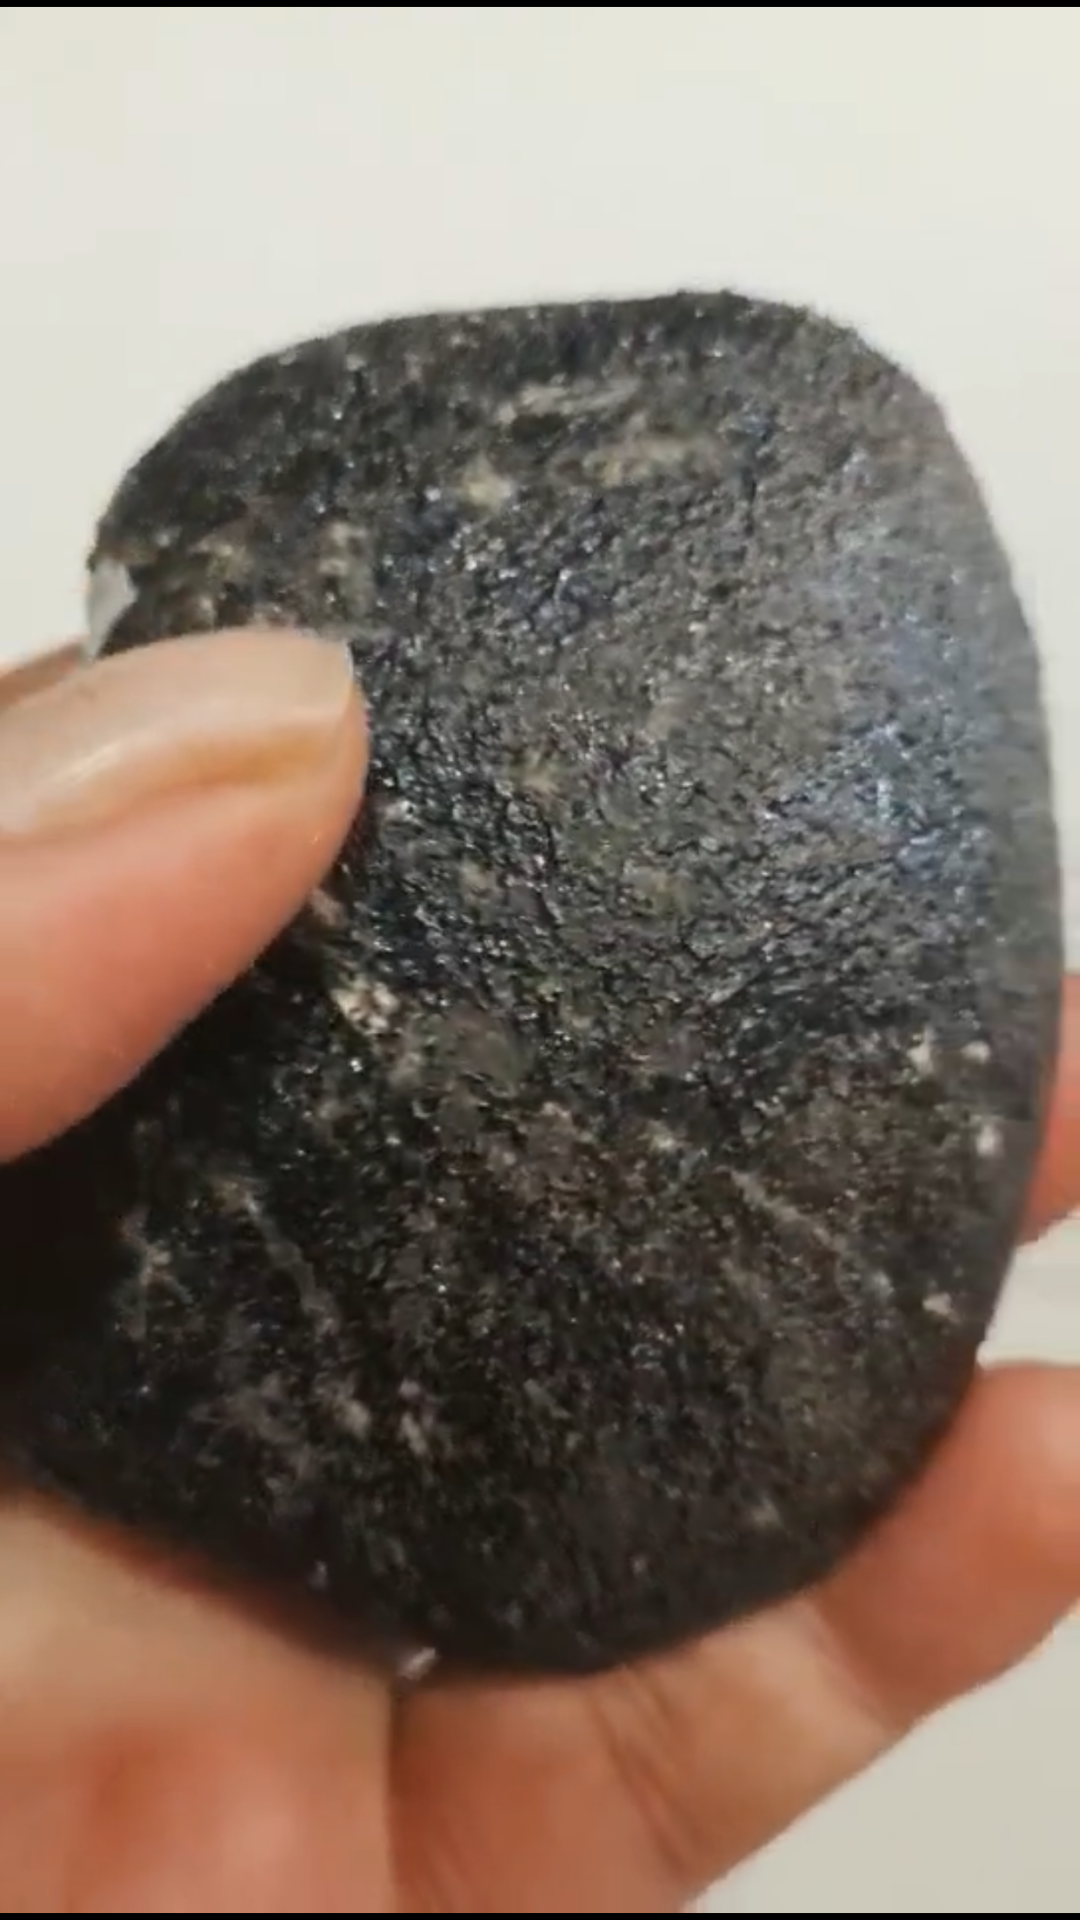 "20210115乌鲁木齐火流星"的陨石找到了!